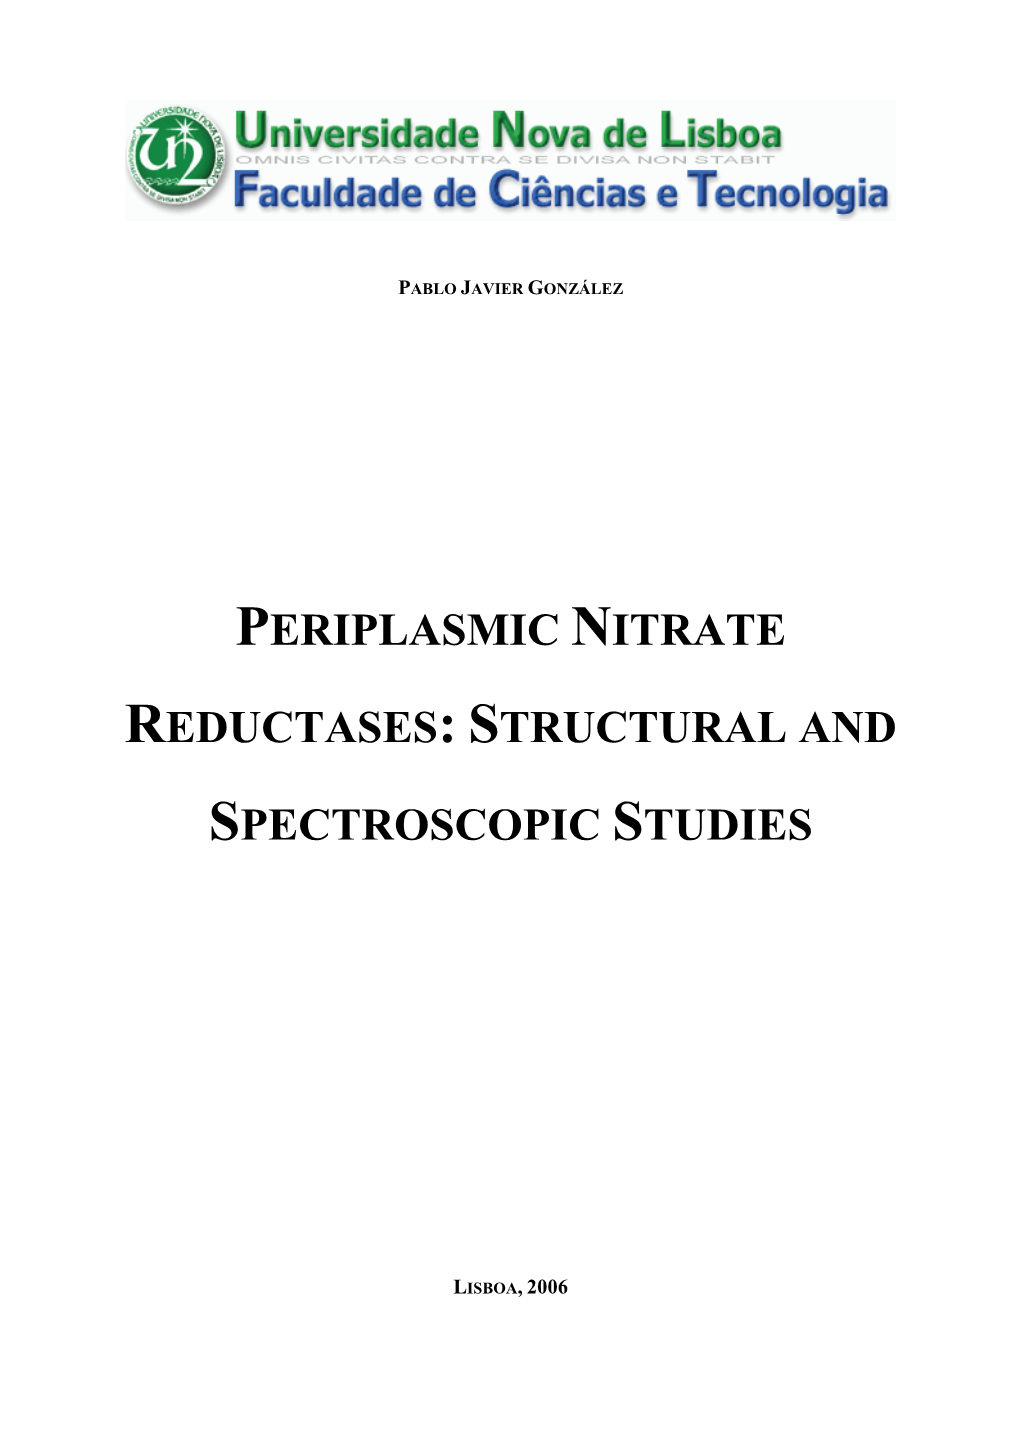 Periplasmic Nitrate Reductases (Nap)